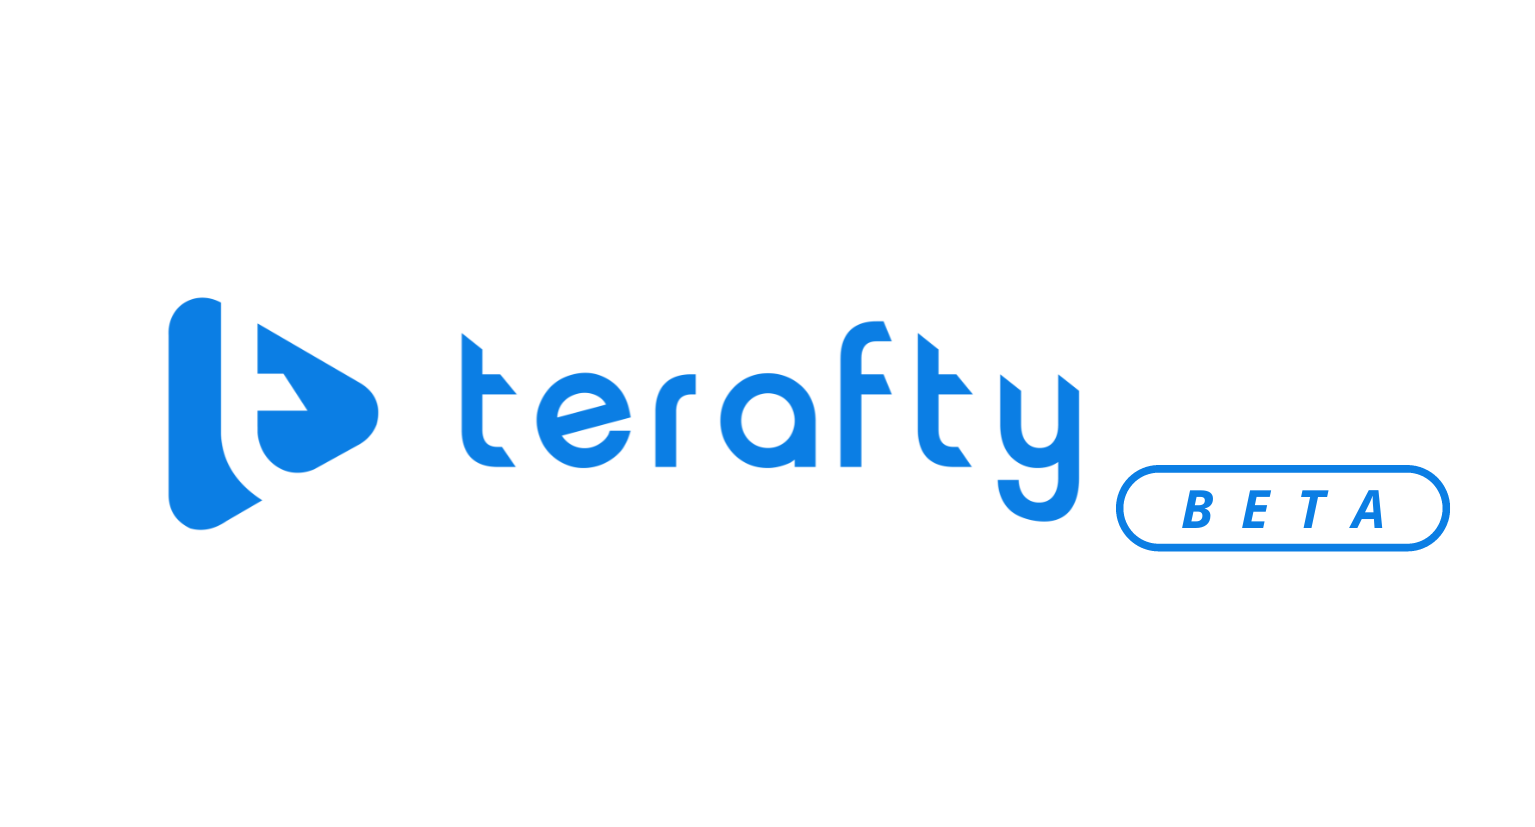 Terafty